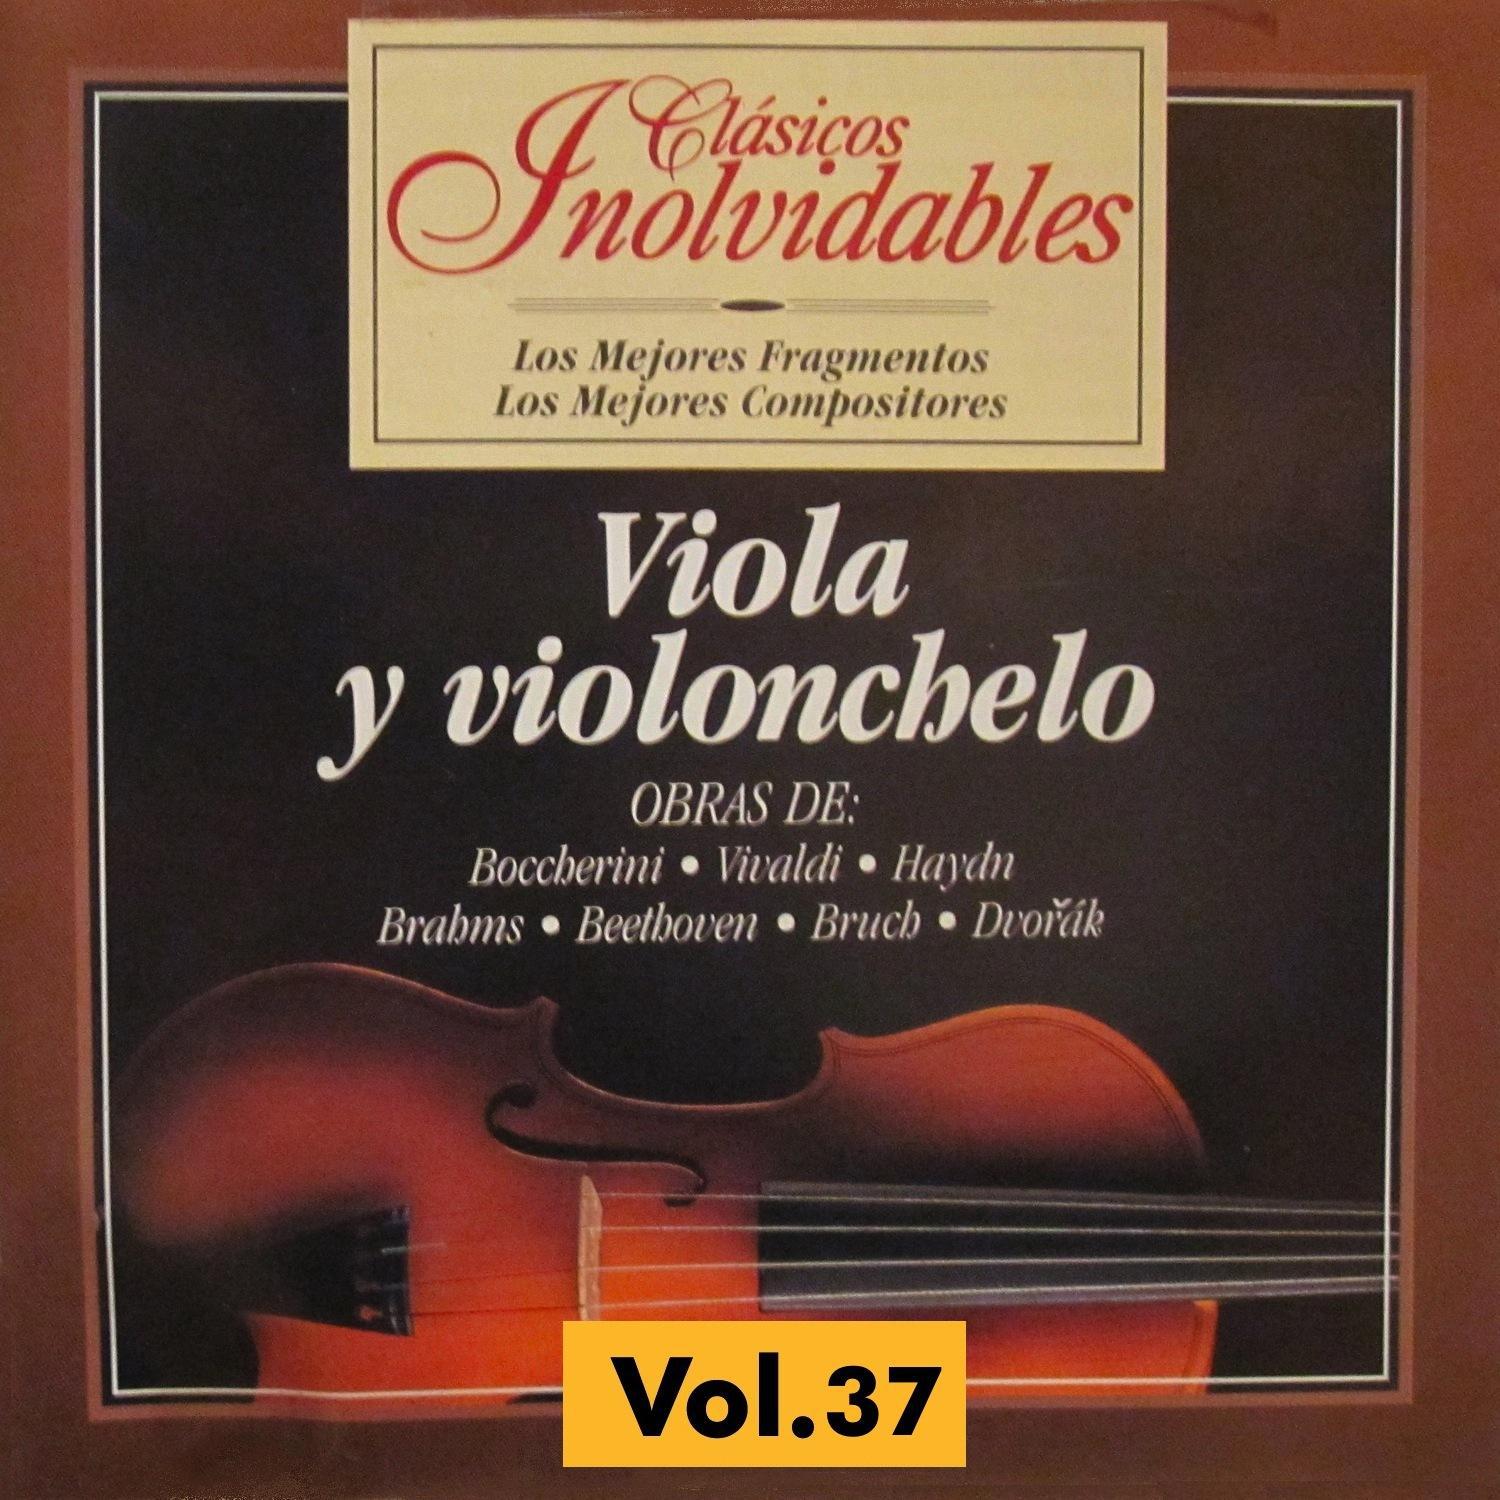 Cla sicos Inolvidables Vol. 37, Viola y Violoncelo